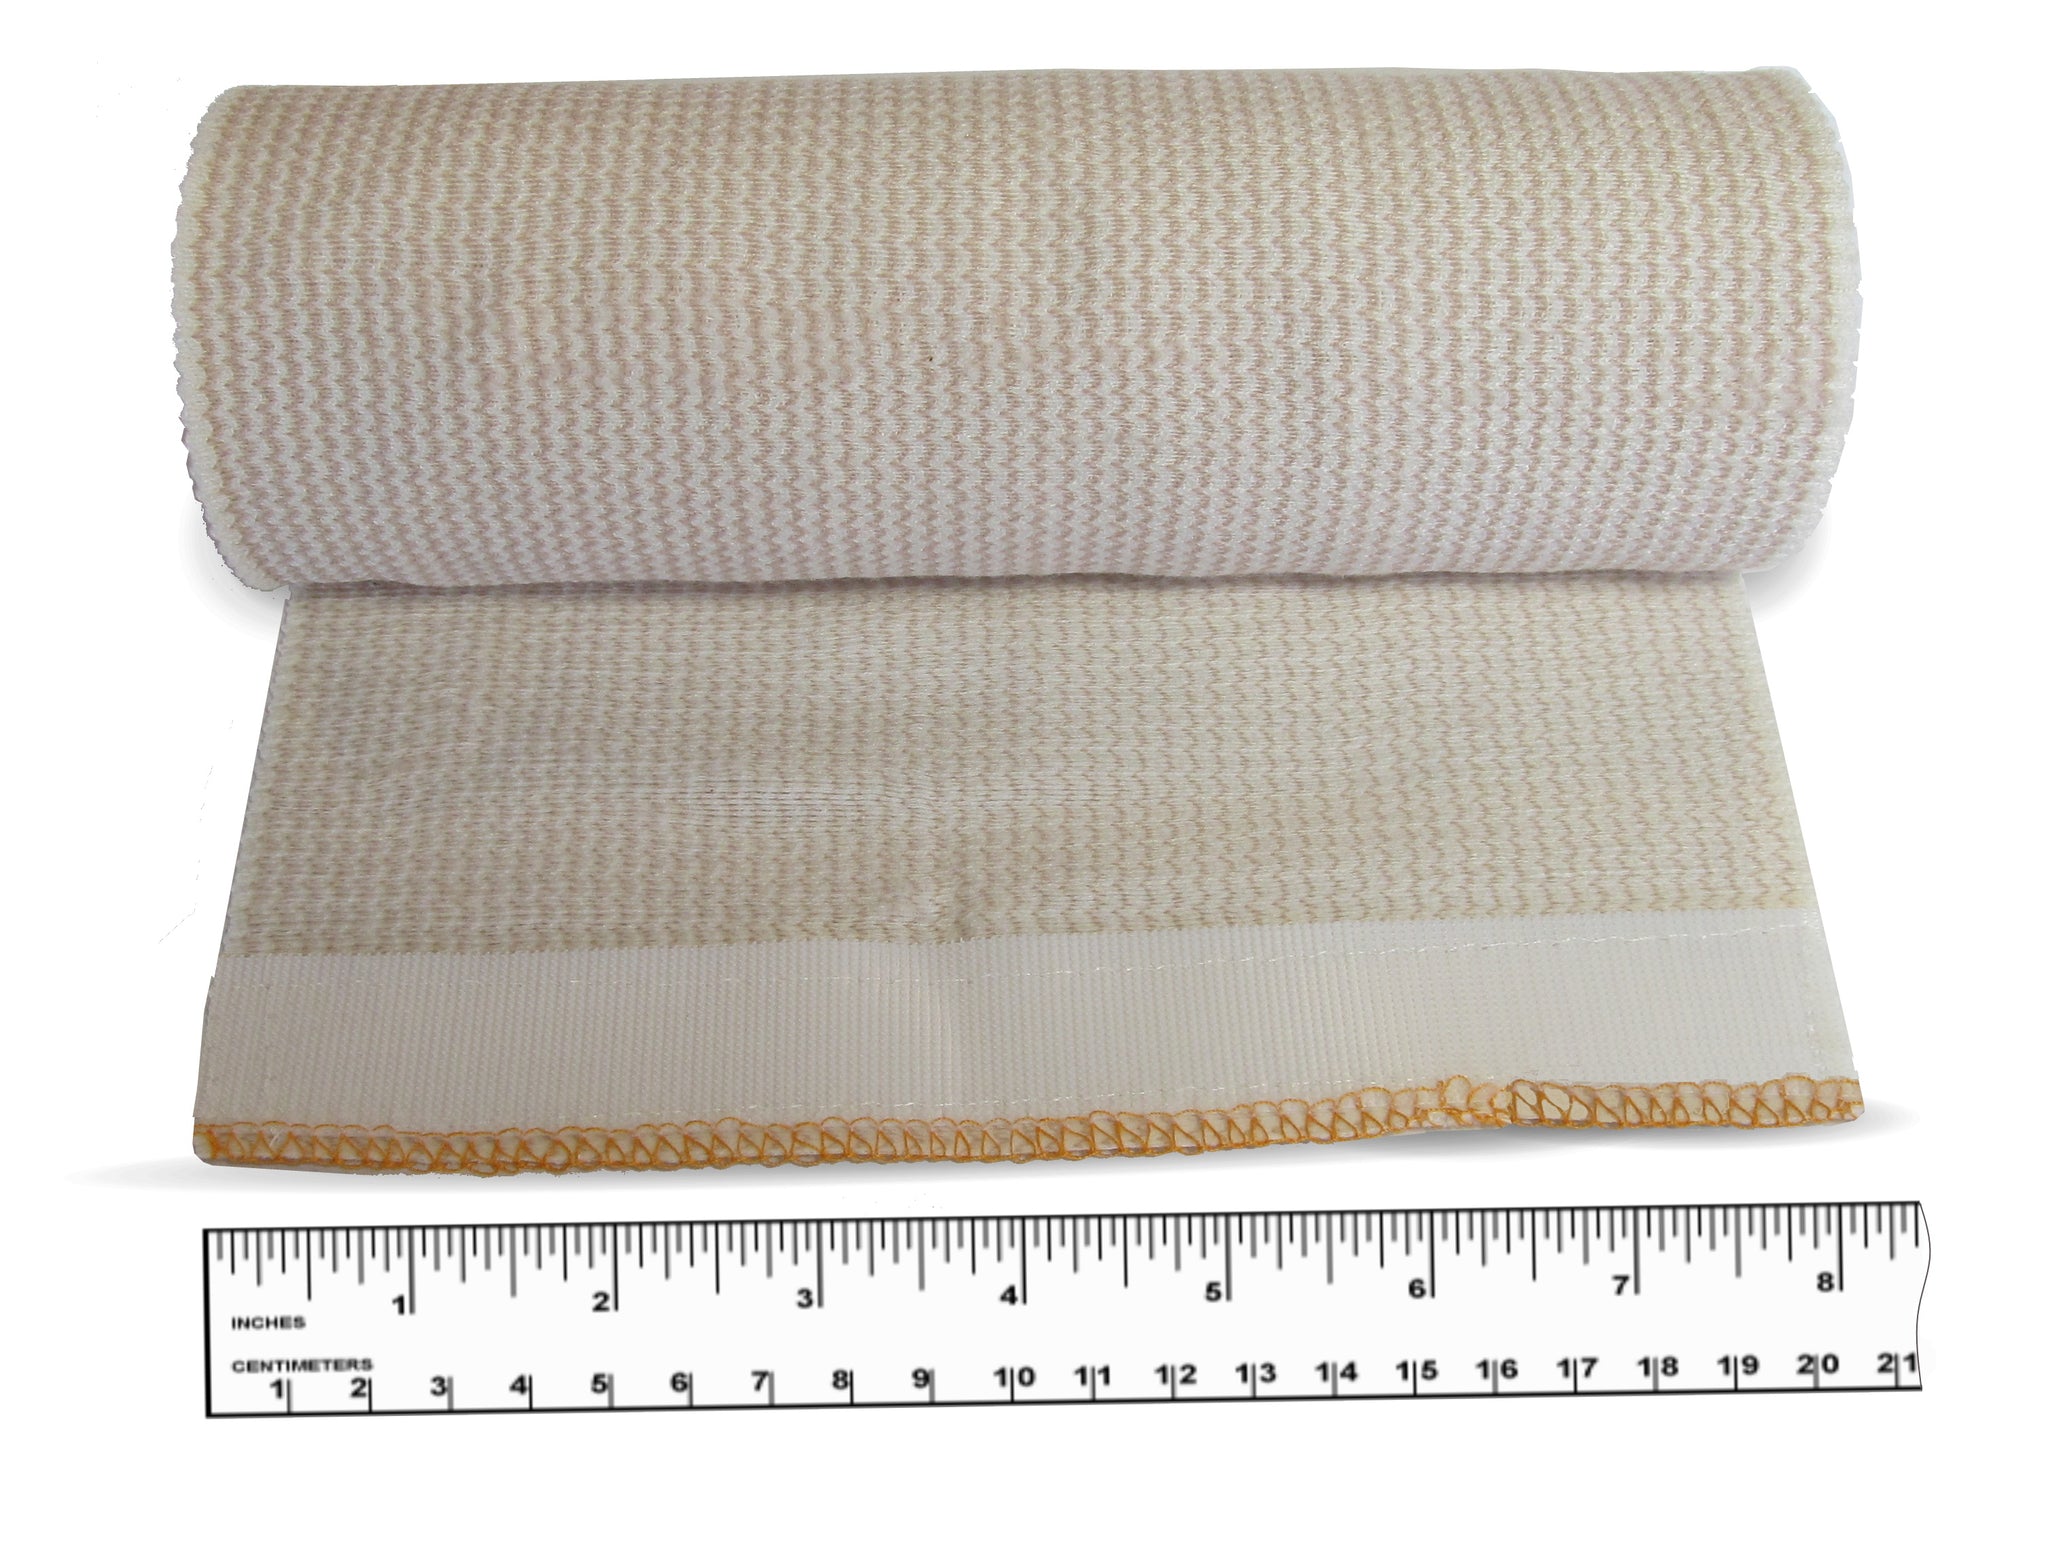 Jumbo Size Body Wrap Elastic Bandages - Ace Bandage with Velco - 8